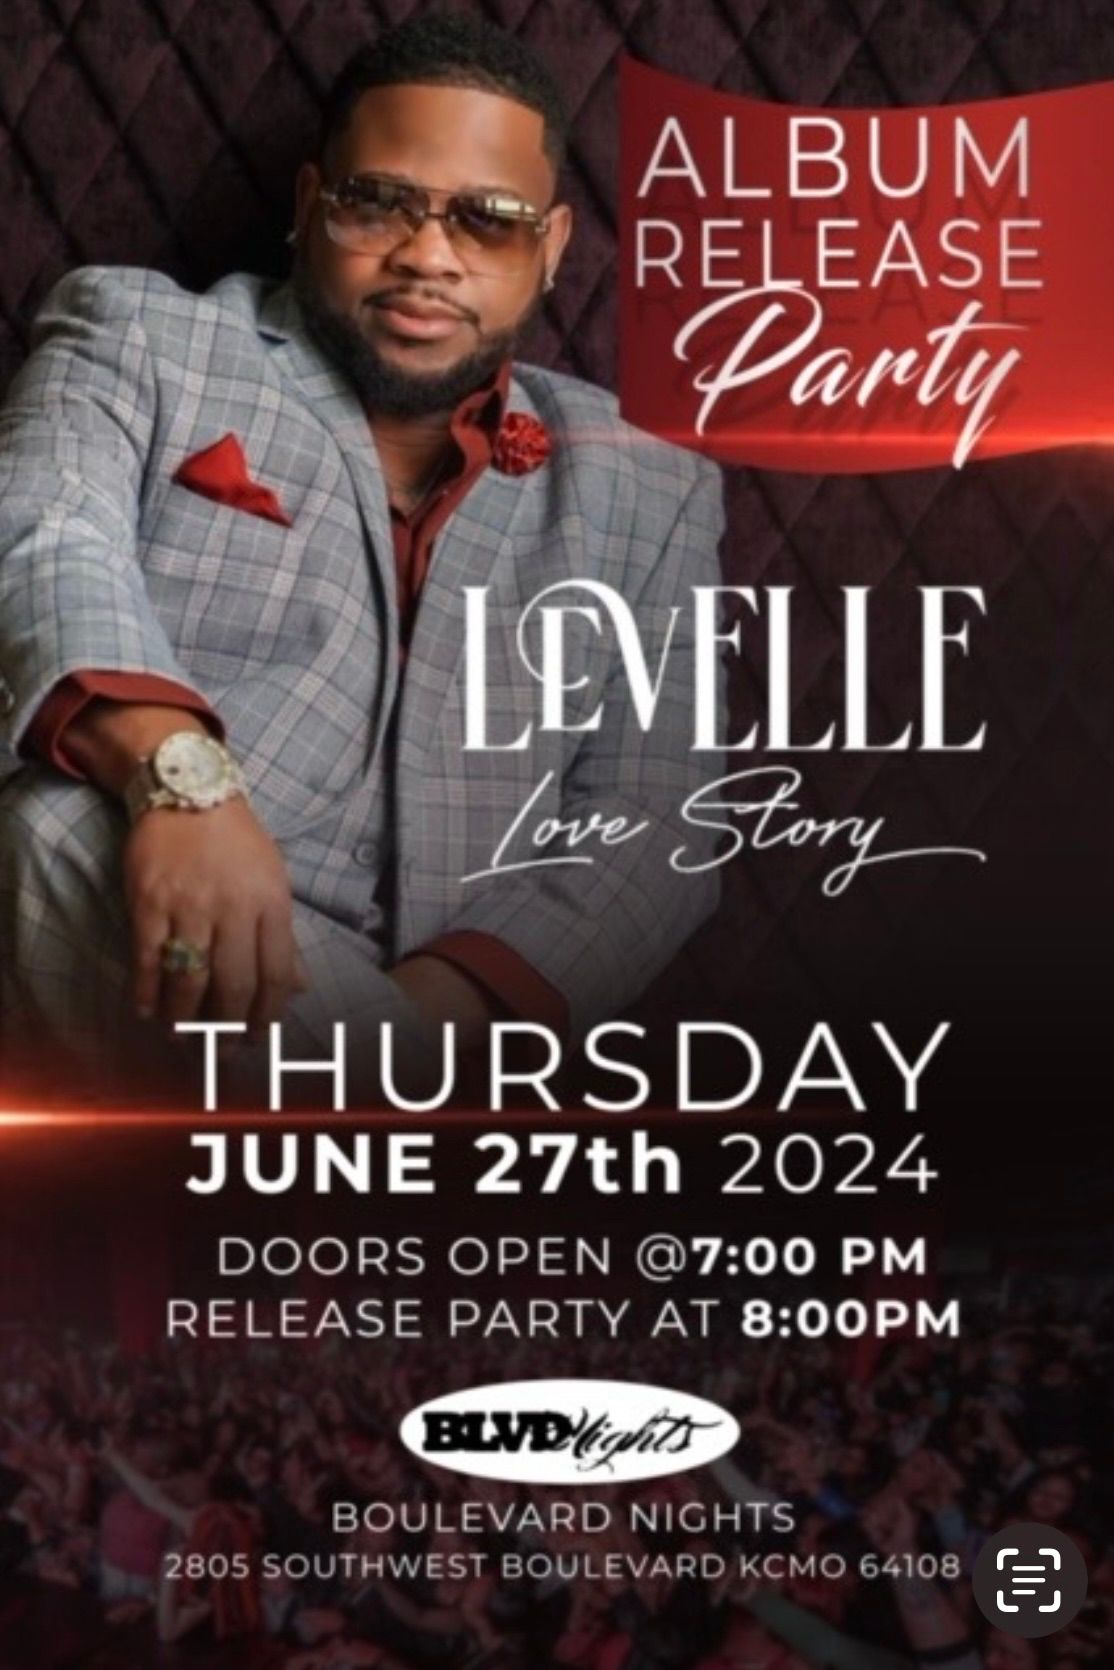 LeVelle Bkc's Album Release Party